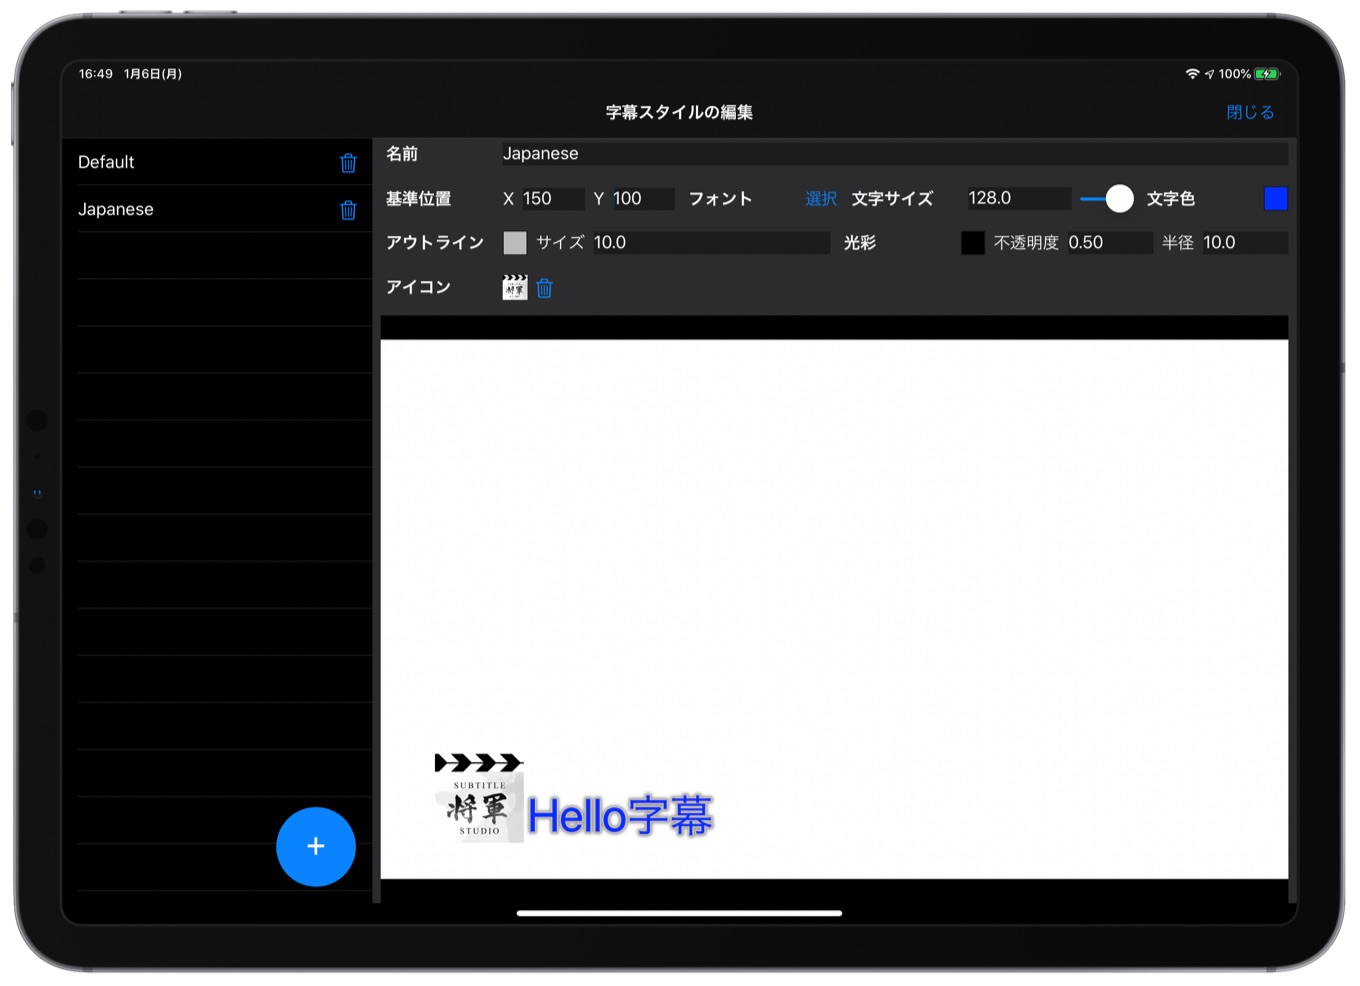 Subtitle Shogun for iPadOS Style